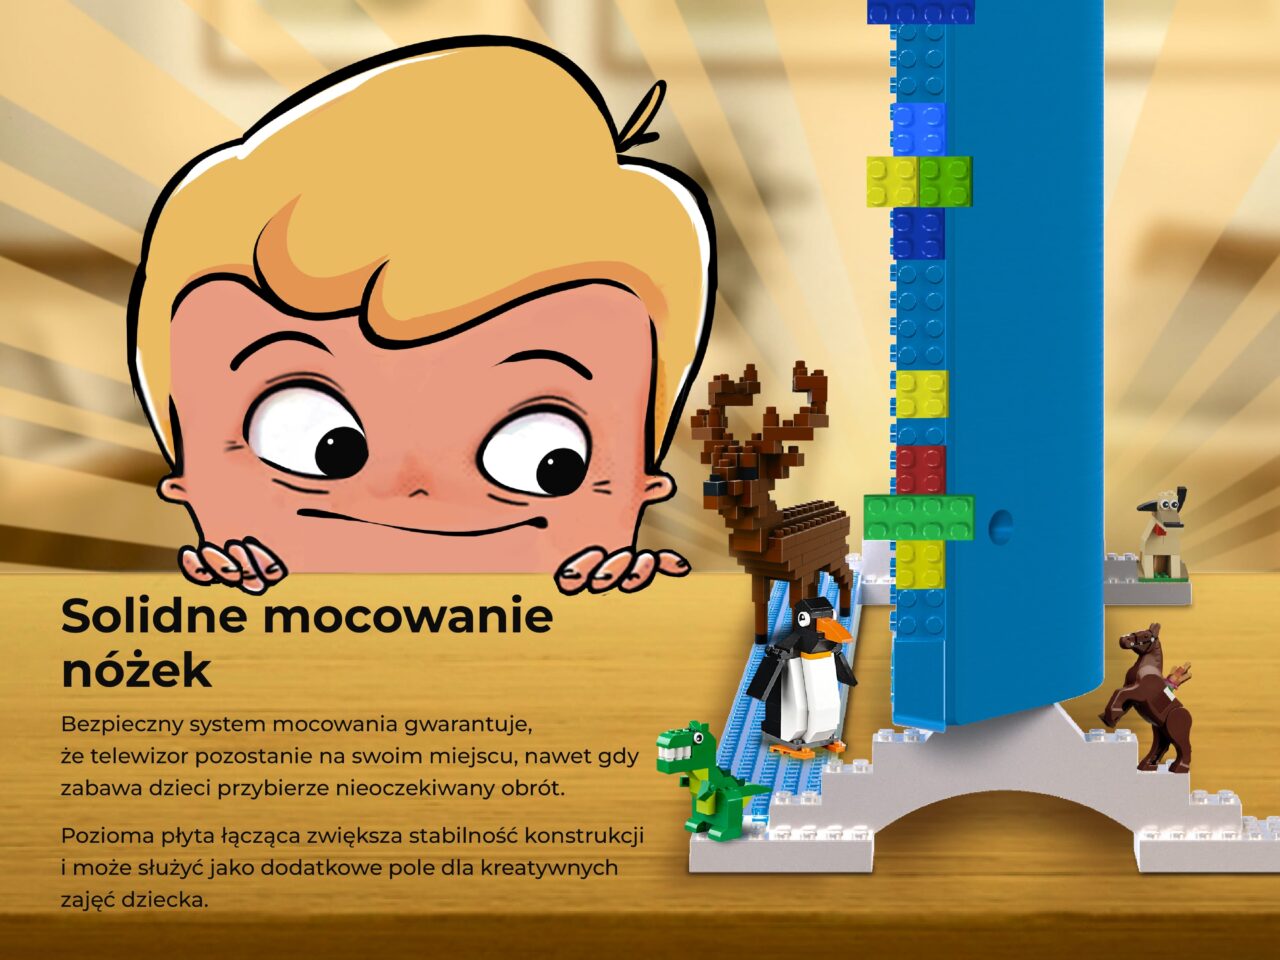 Grafika reklamowa przedstawiająca kolorowy mebel dla dzieci w kształcie postaci z bajki, obok którego znajdują się zabawki i figurki z klocków przypominające zwierzęta; w tle pojawia się tekst promujący solidne mocowanie nóżek mebla.